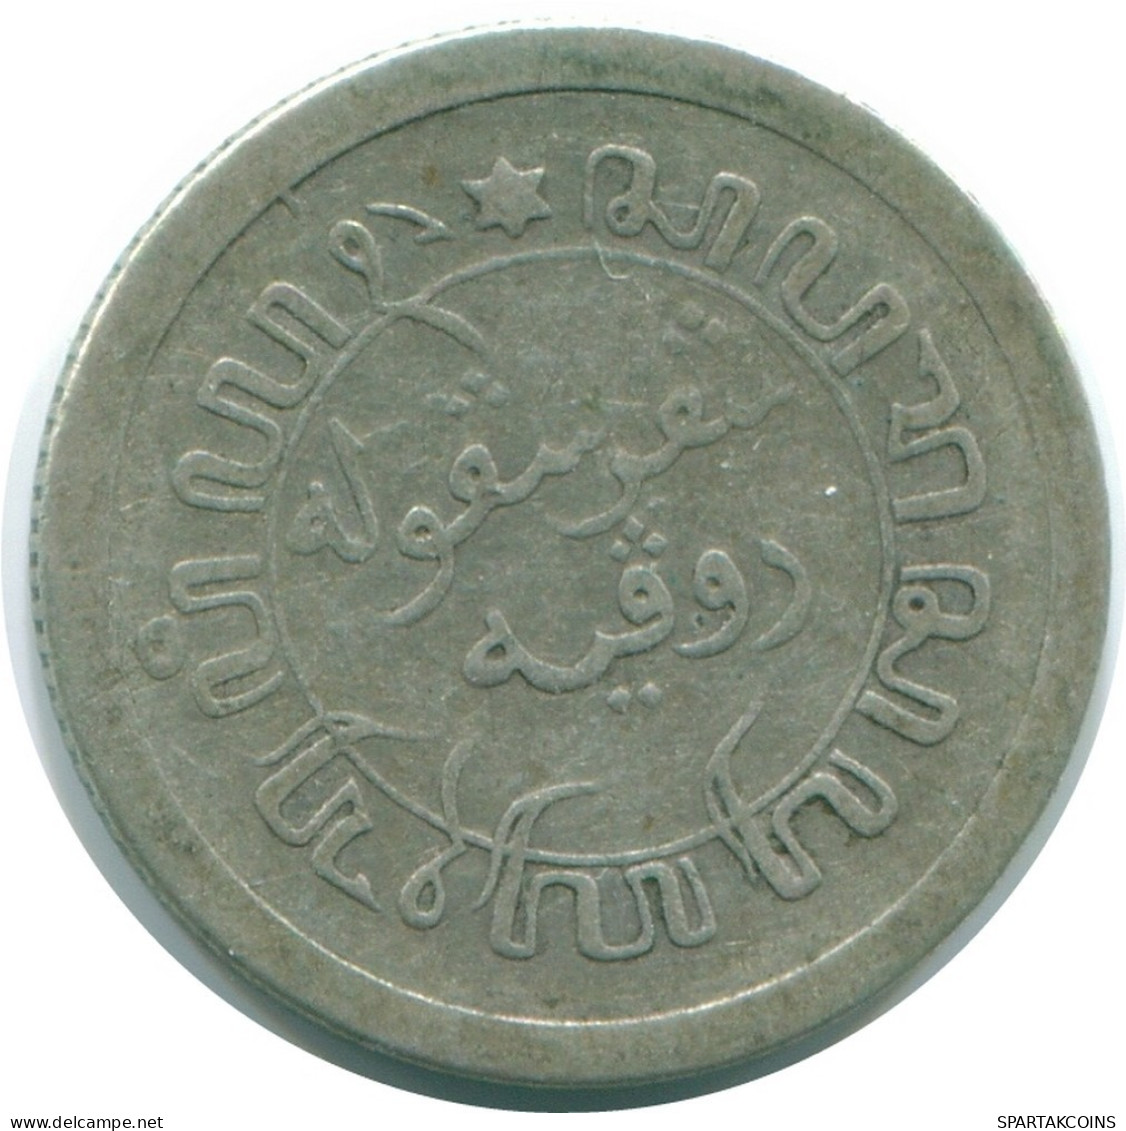 1/10 GULDEN 1912 NIEDERLANDE OSTINDIEN SILBER Koloniale Münze #NL13265.3.D.A - Niederländisch-Indien